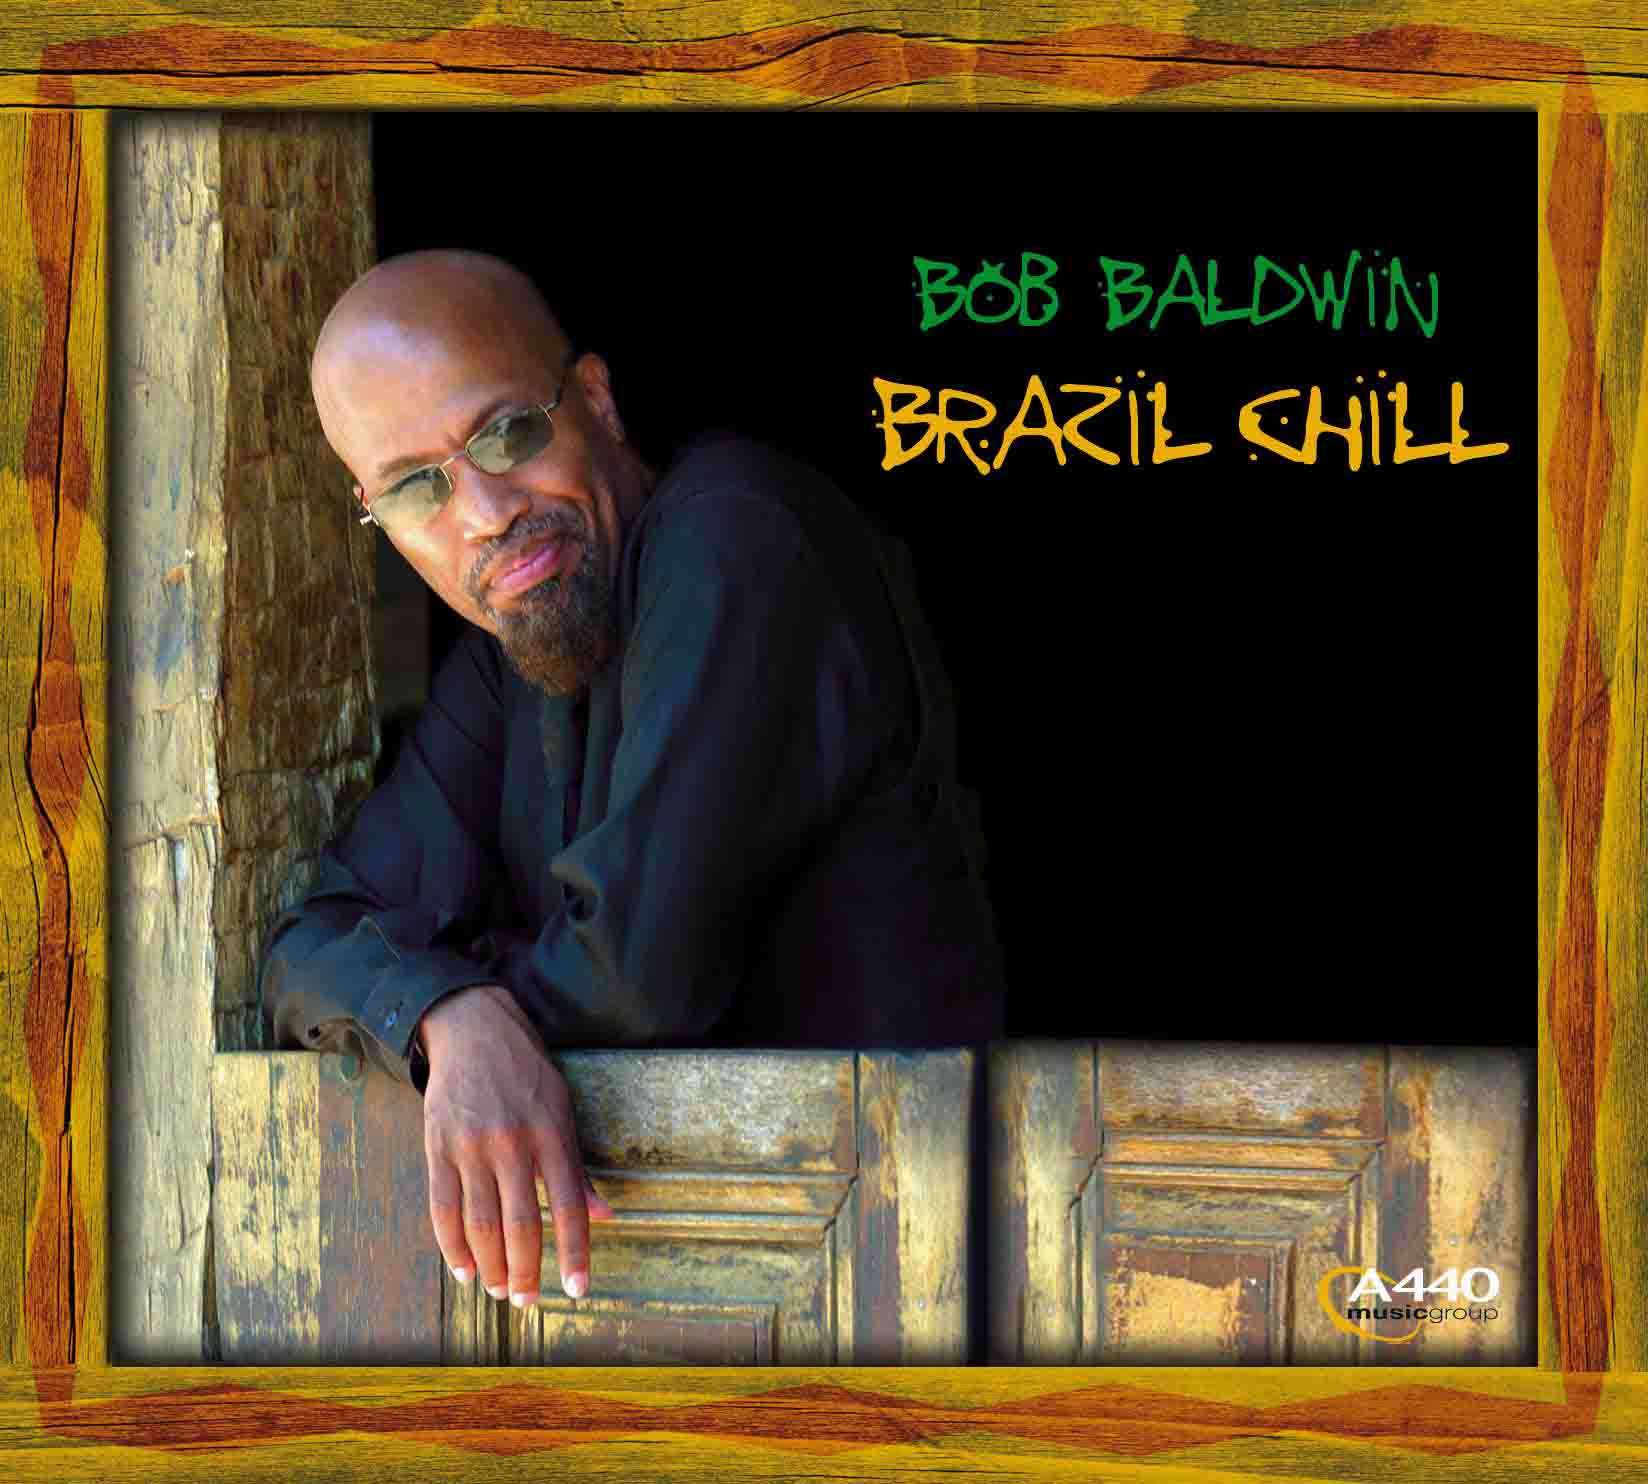 BOB BALDWIN - BRAZIL CHILL